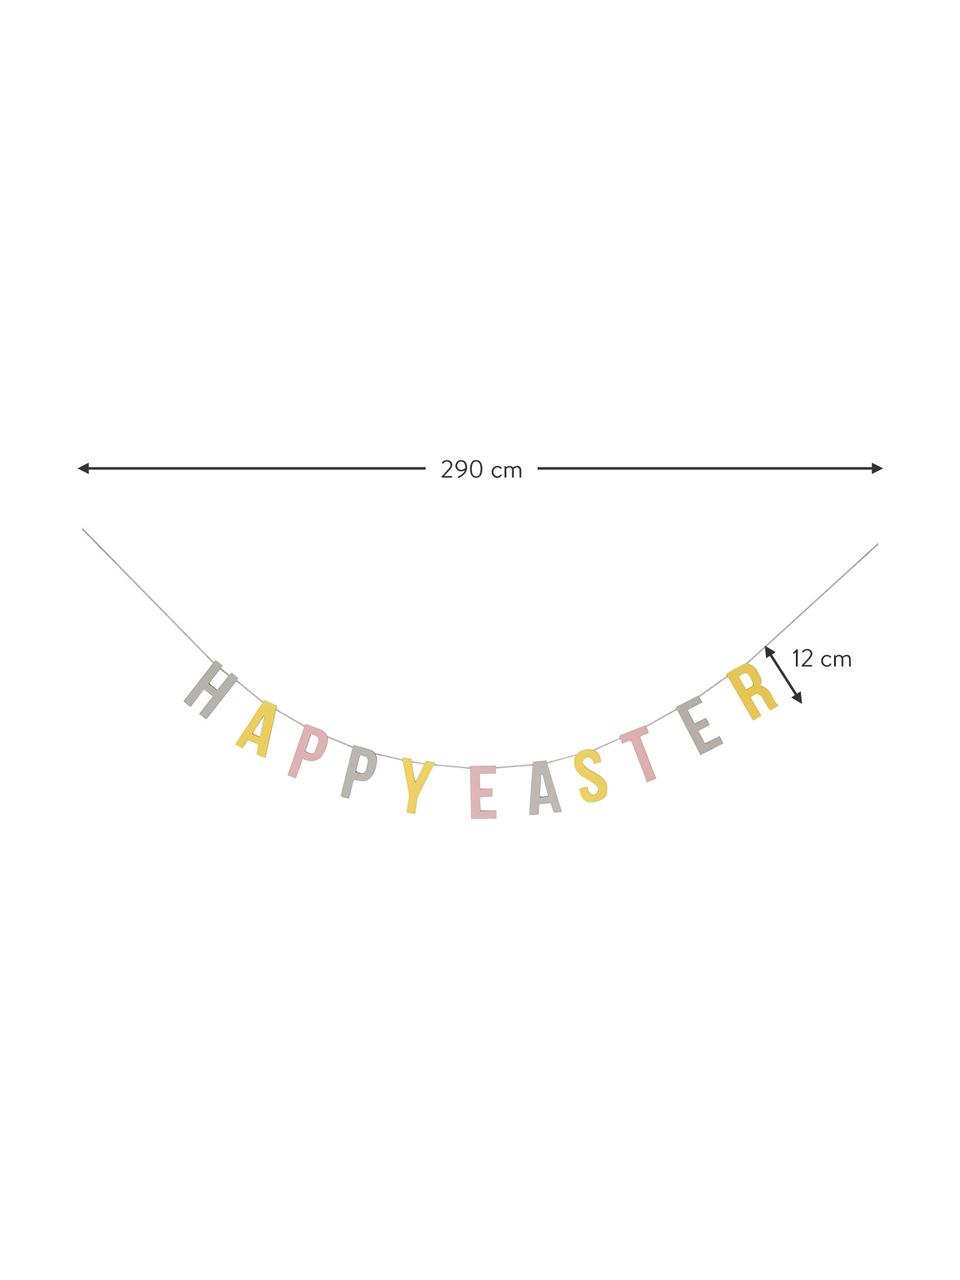 Guirlande Happy Easter, Panneau en fibres de bois à densité moyenne (MDF), ficelle, Gris, jaune, rose, larg. 290 x haut. 12 cm